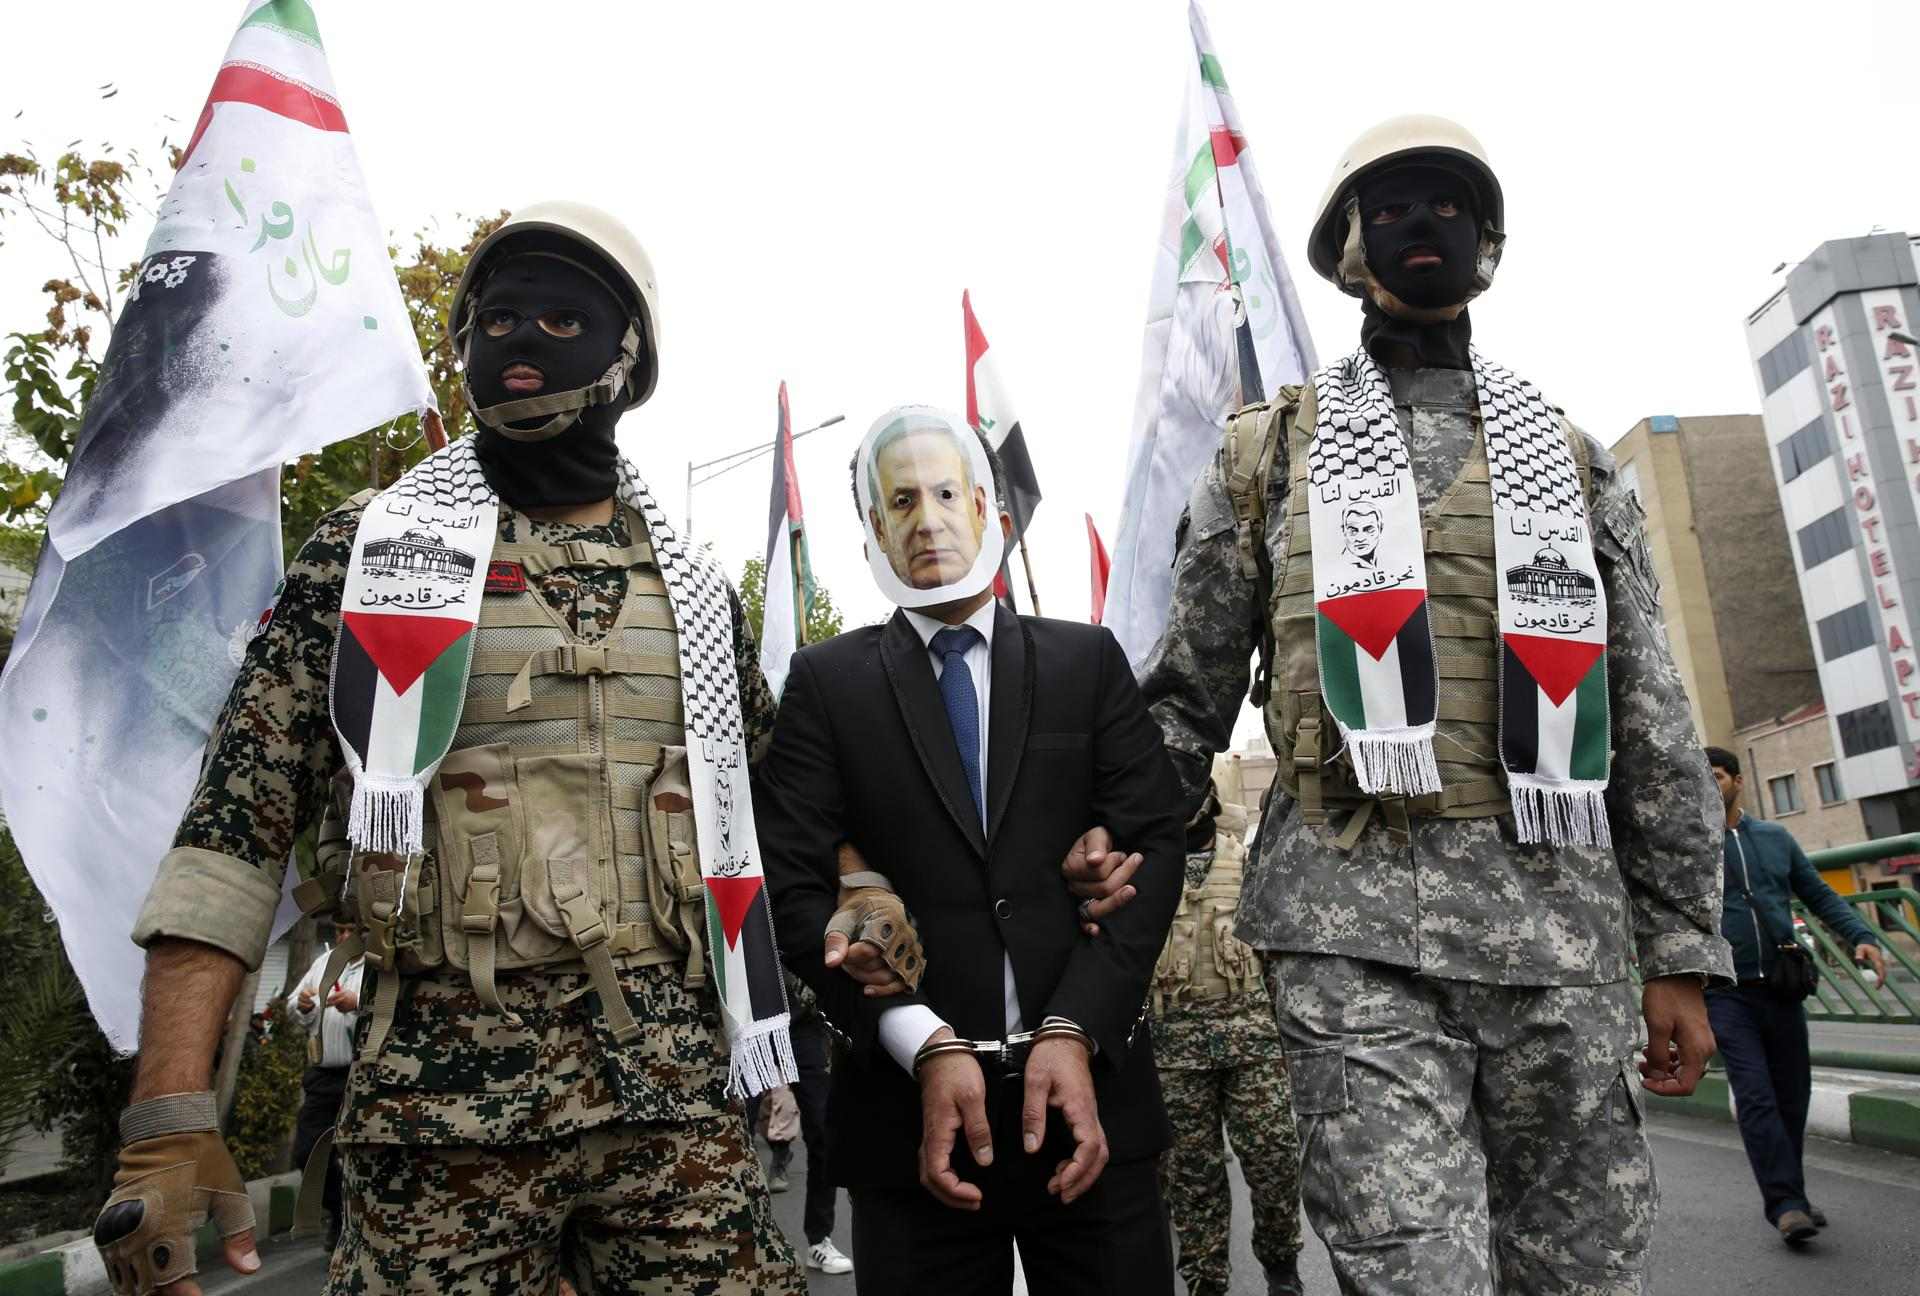 Moren quatre membres de la Guàrdia Revolucionària iraniana a Síria, que l'Iran atribueix a Israel